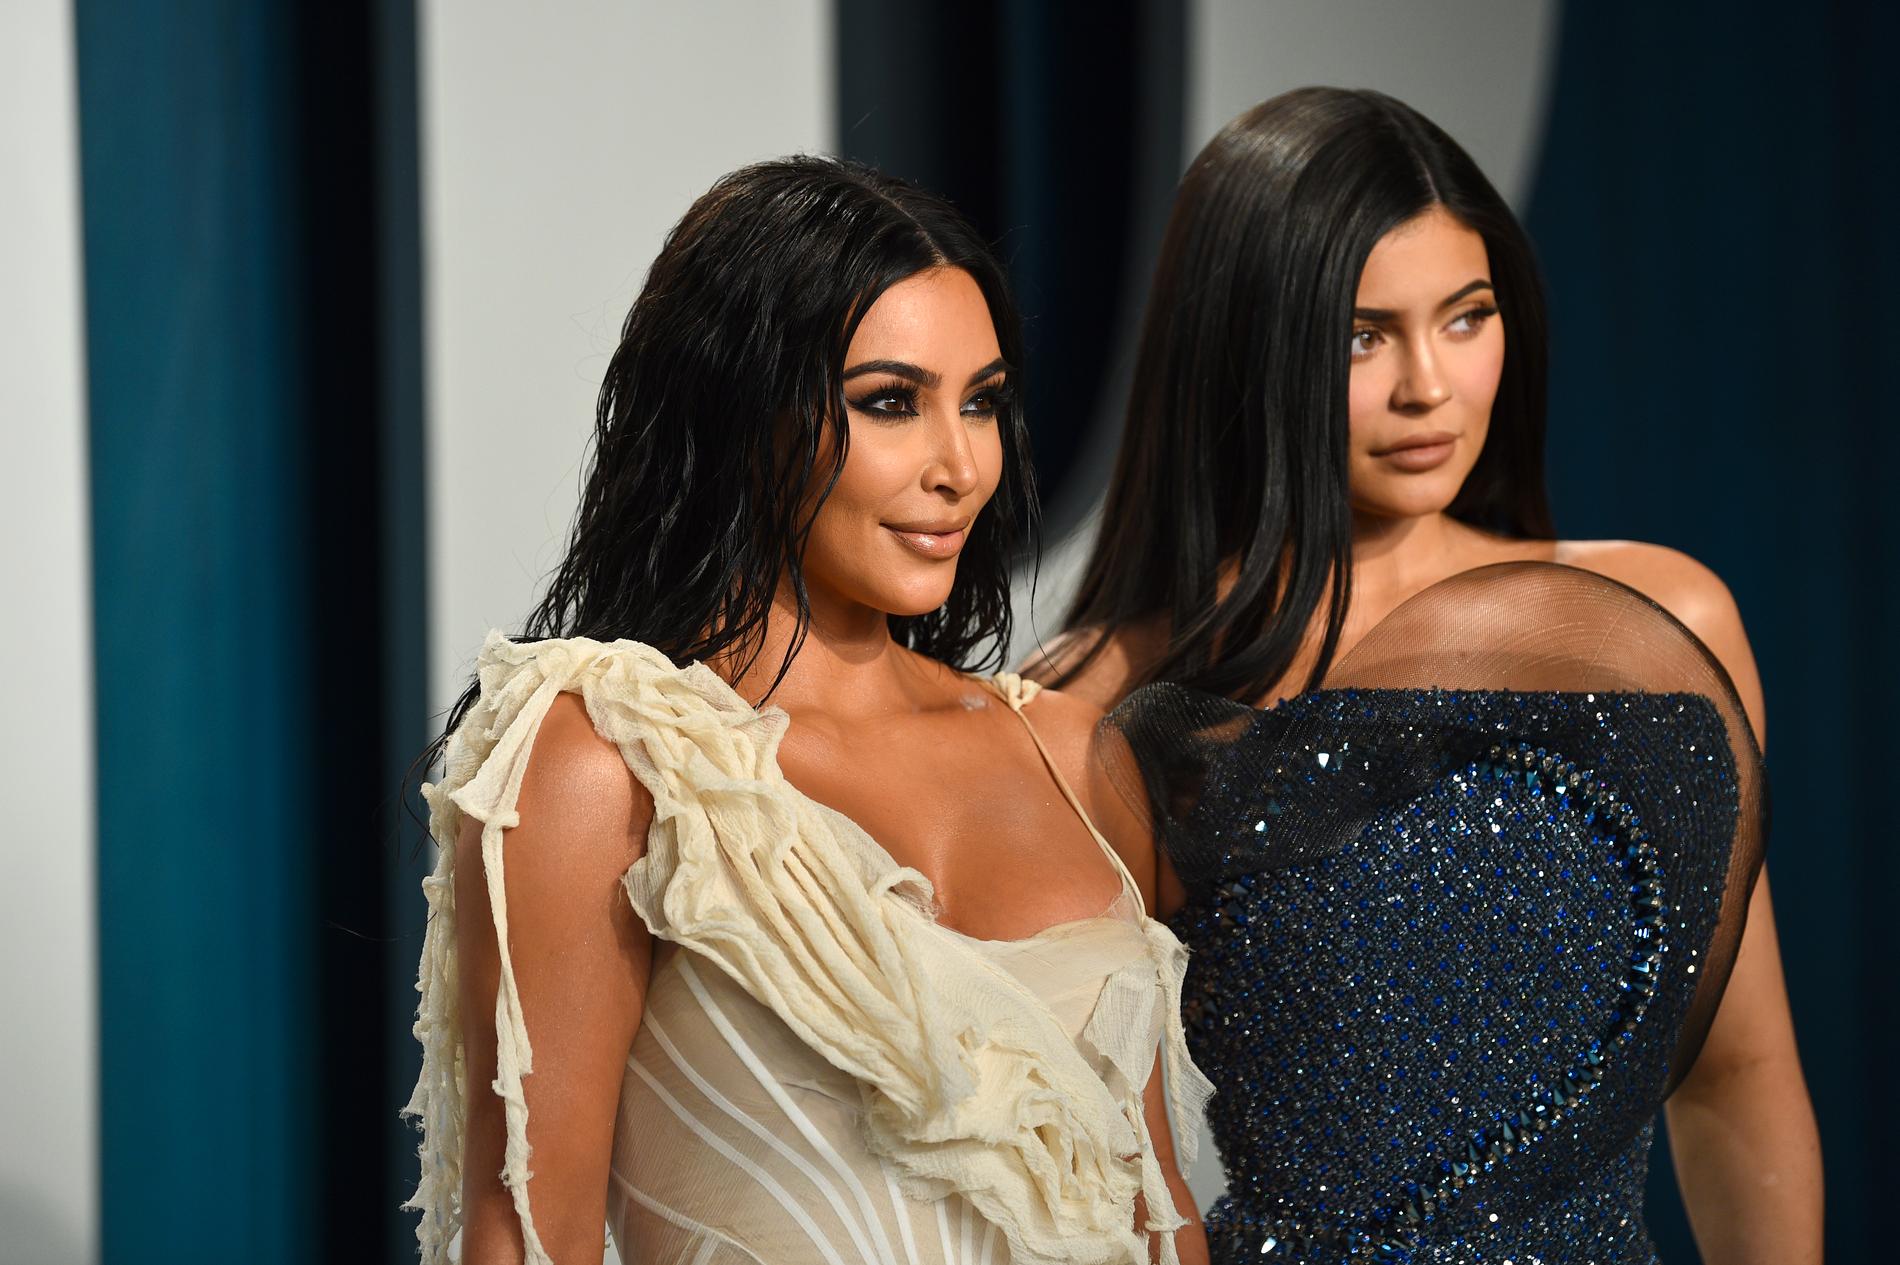 I september kom beskedet att långköraren ”Keeping up with the Kardashians” läggs ner. Sista avsnittet sänds 2021